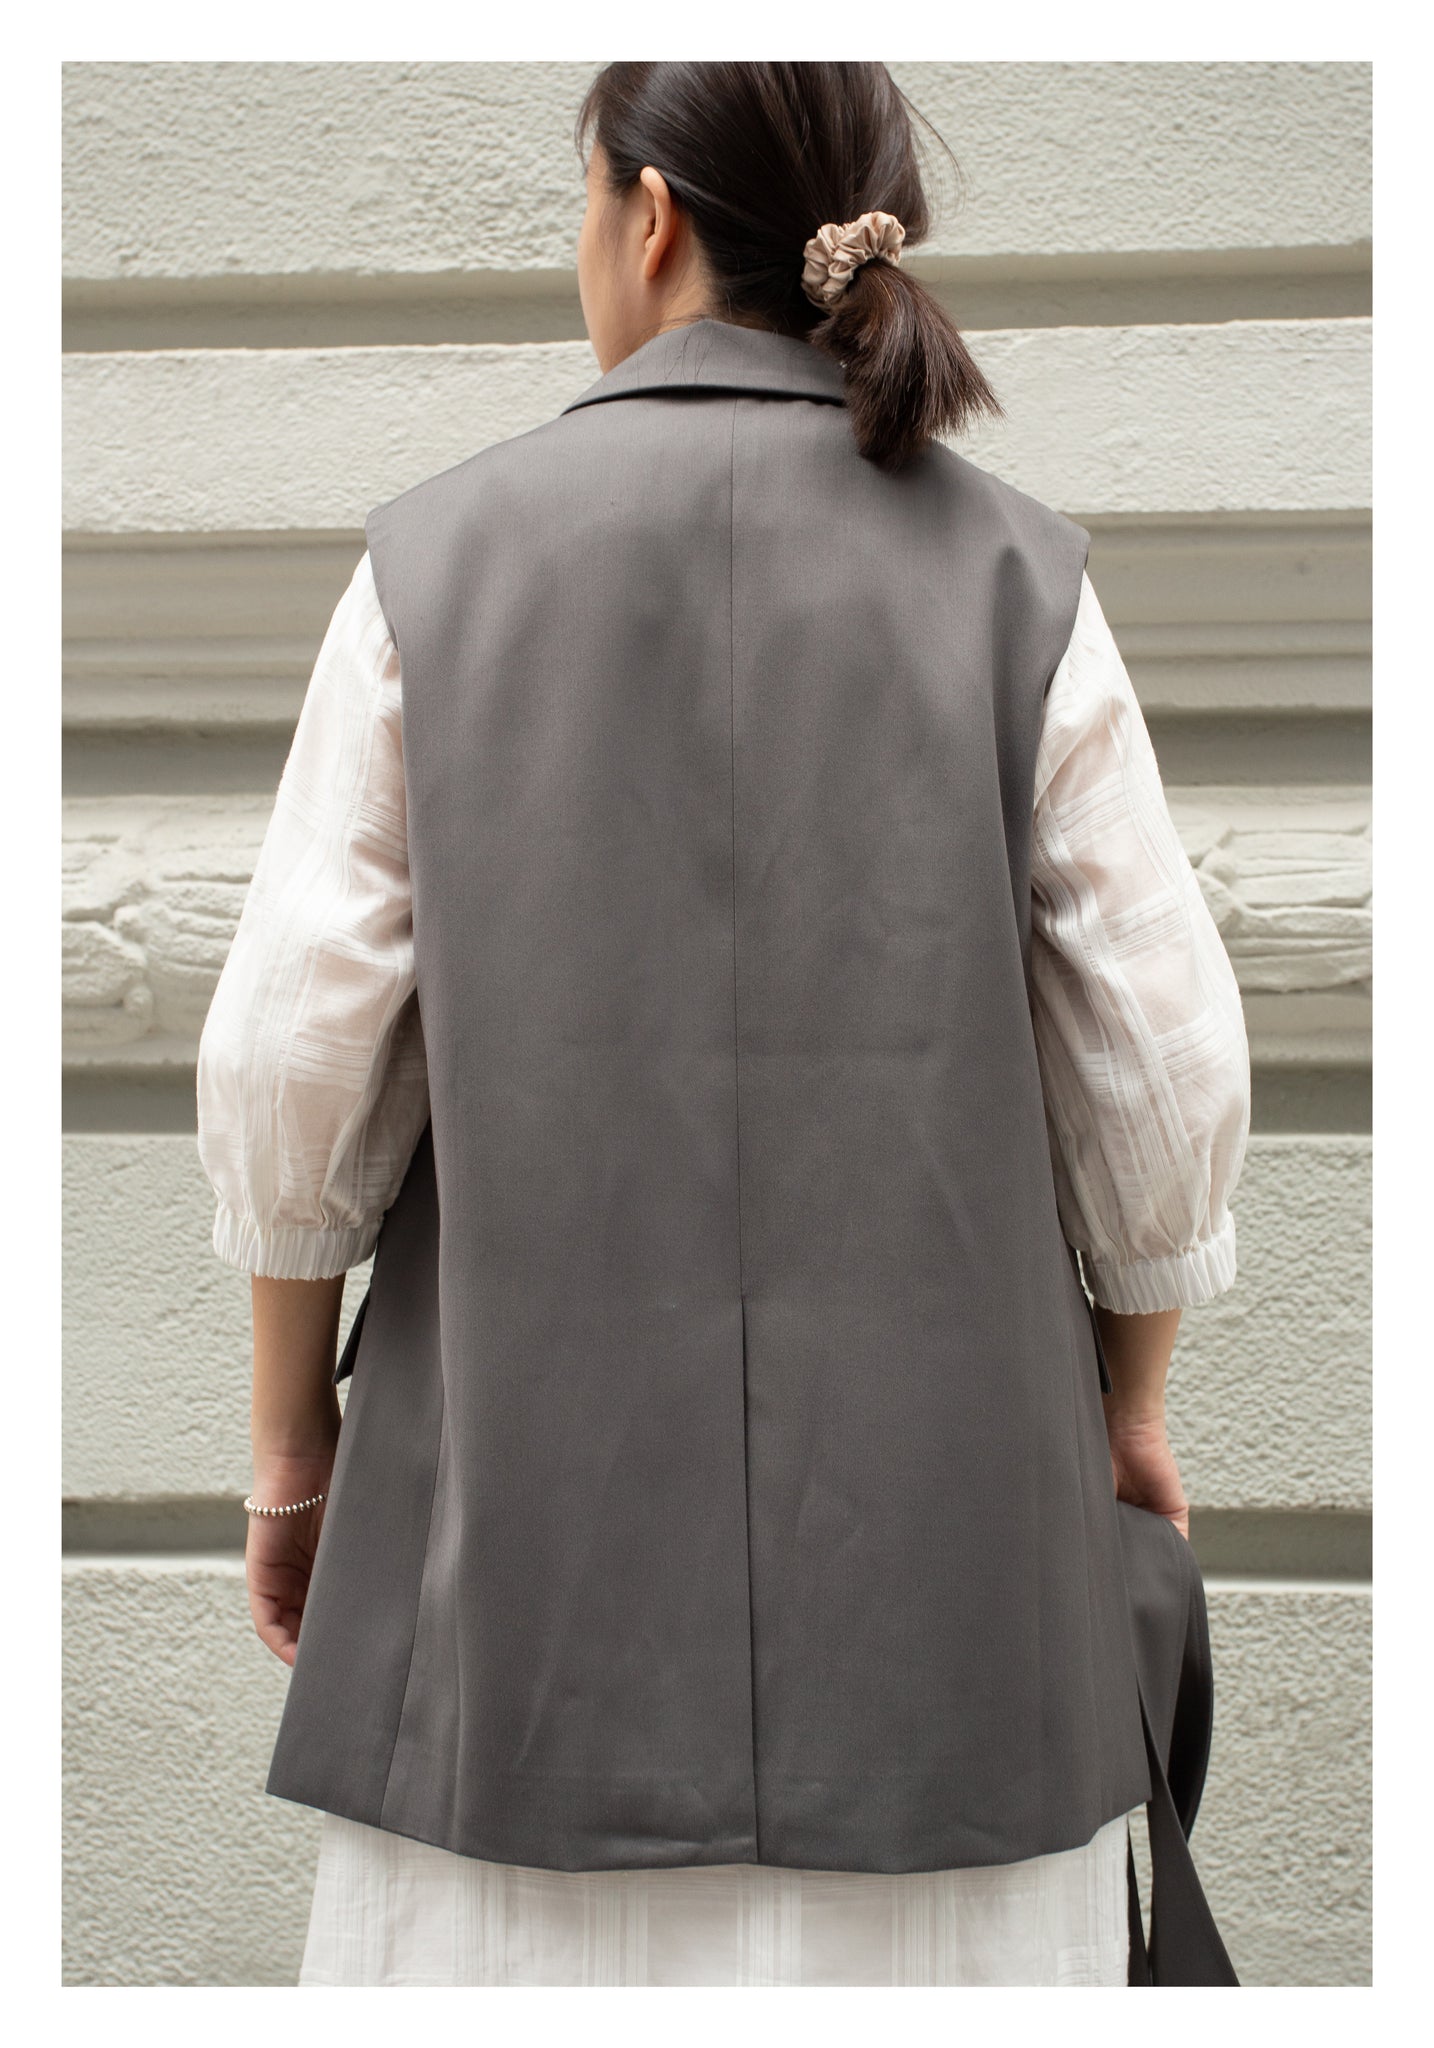 Removable Belt Tailor Vest Jacket Grey - whoami